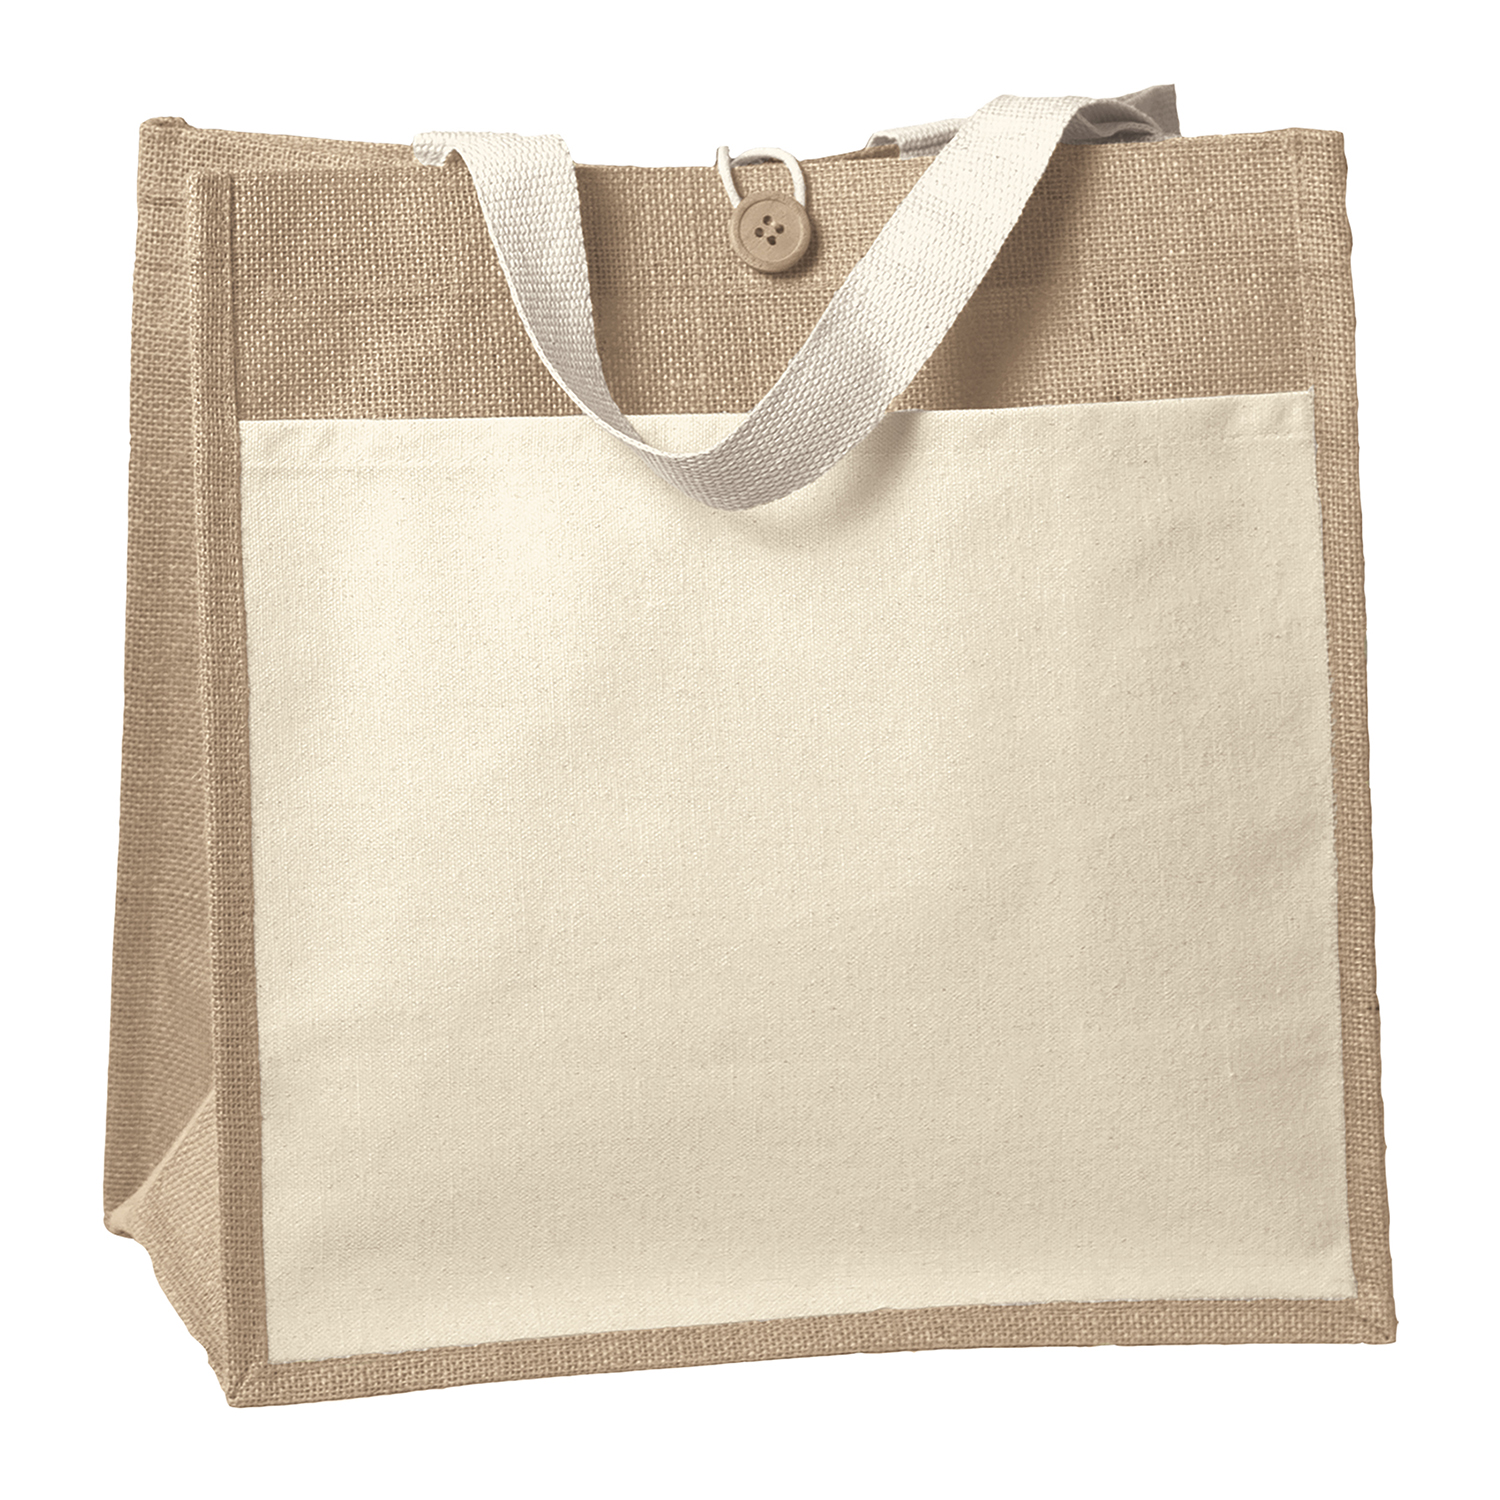 Bag Makers SPIZ1414 - Custom Printed Reusable Tote Bag